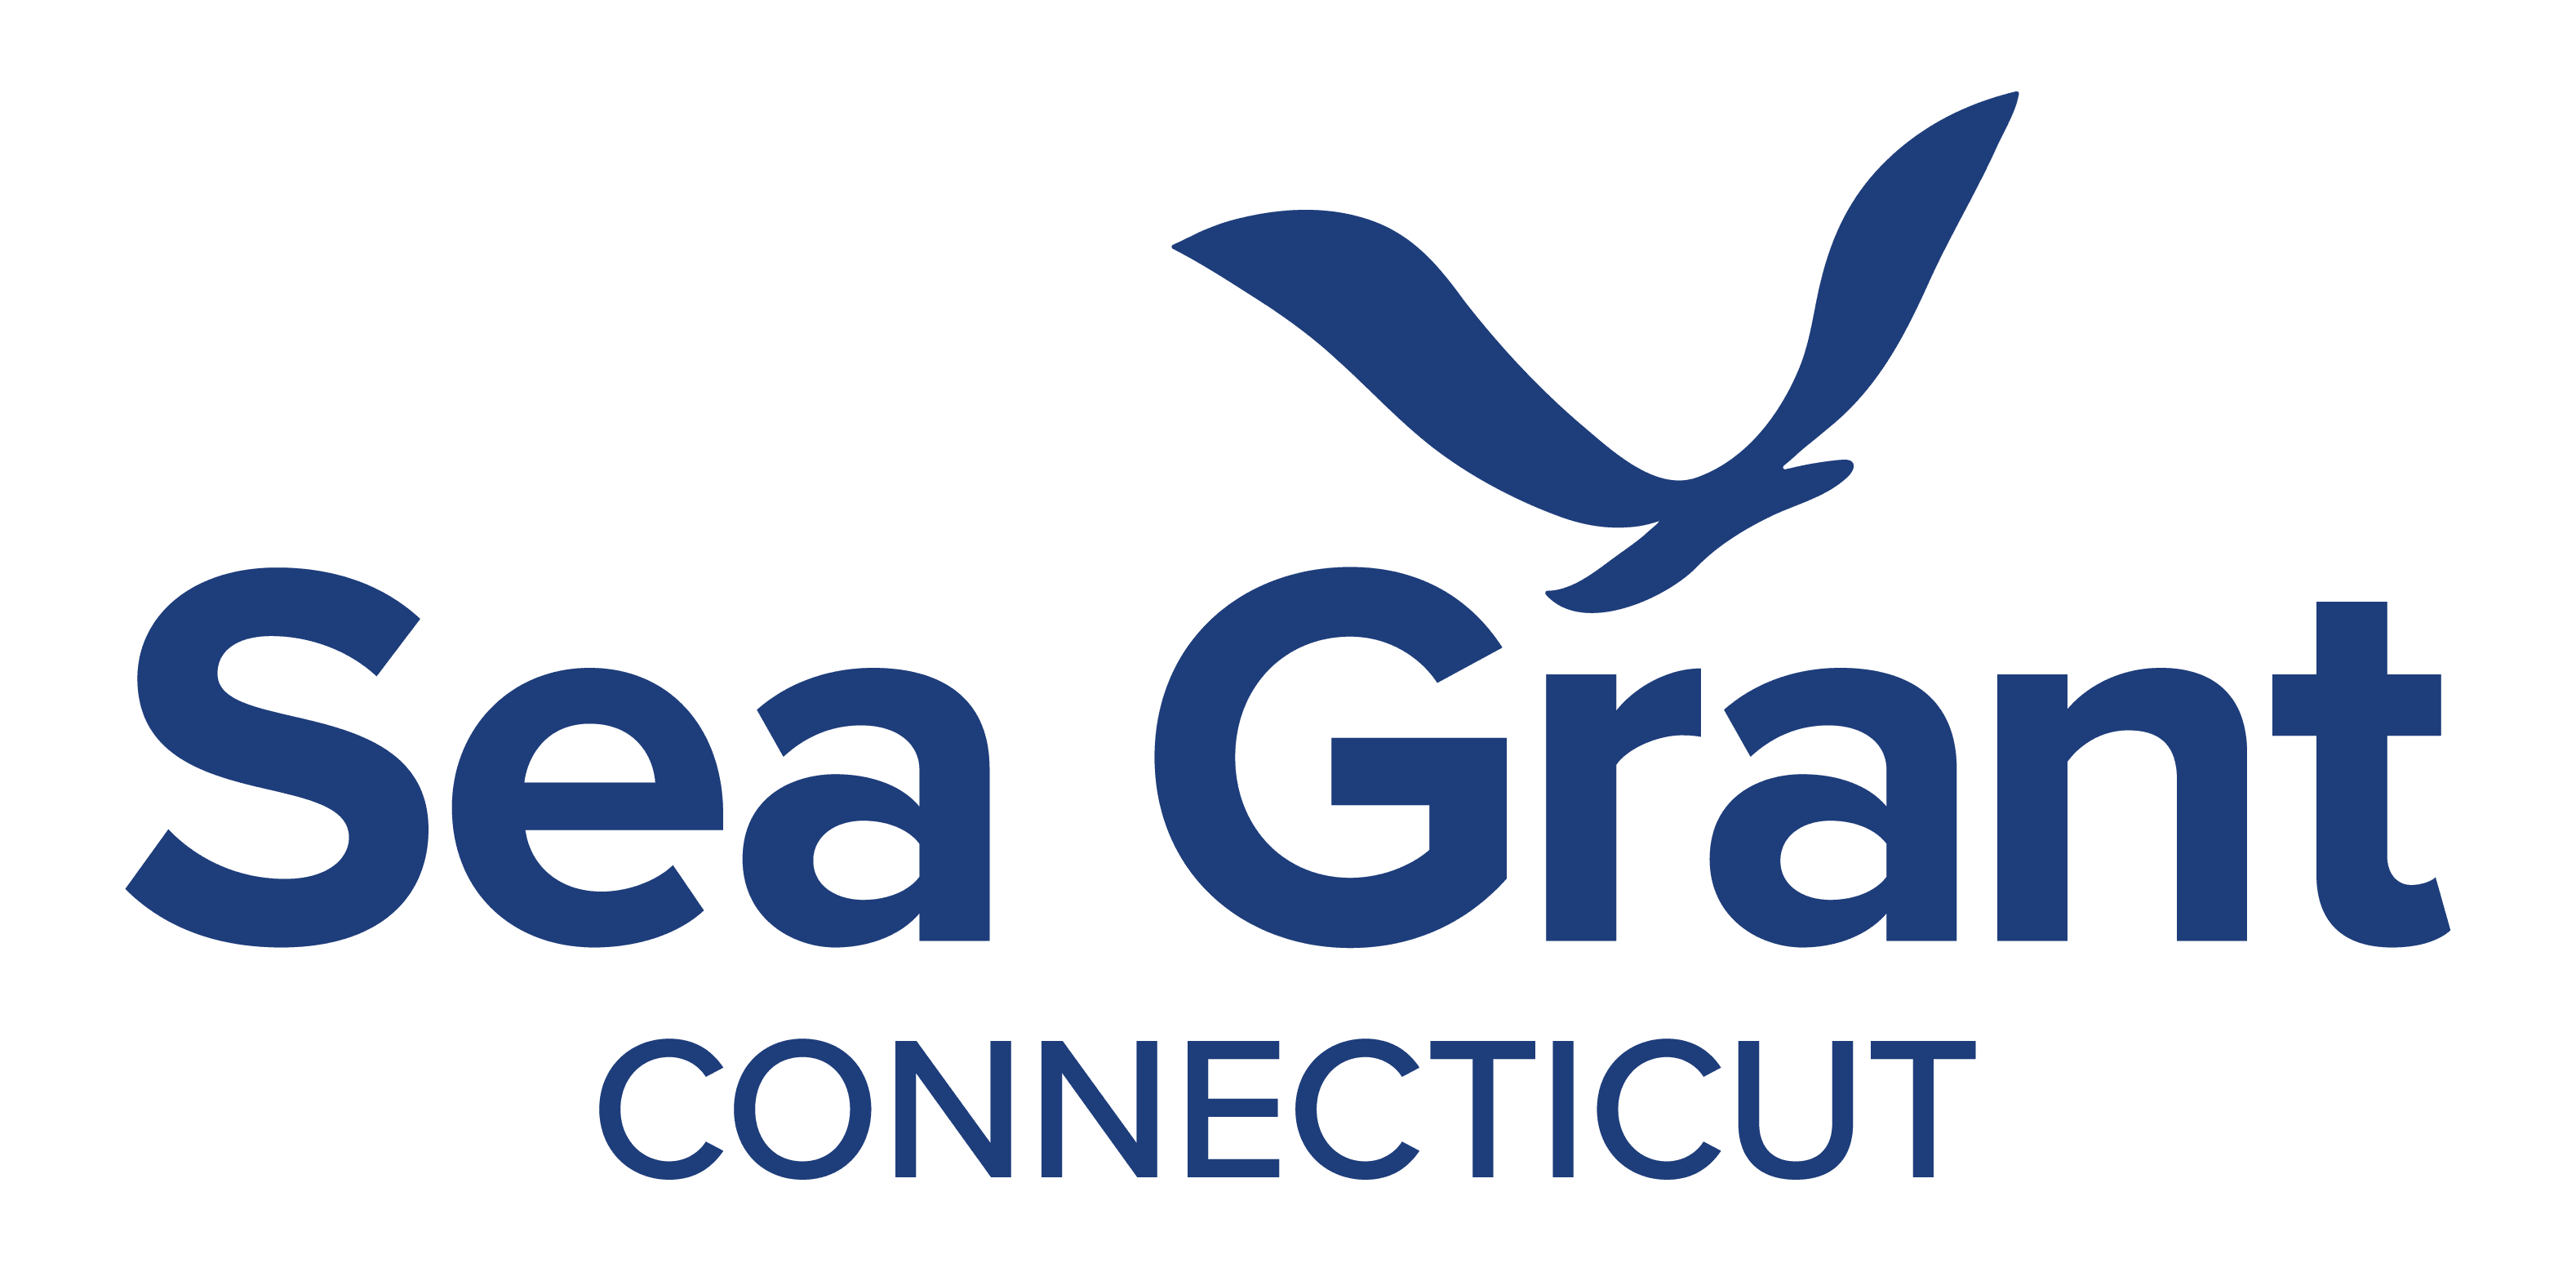 sea grant logo